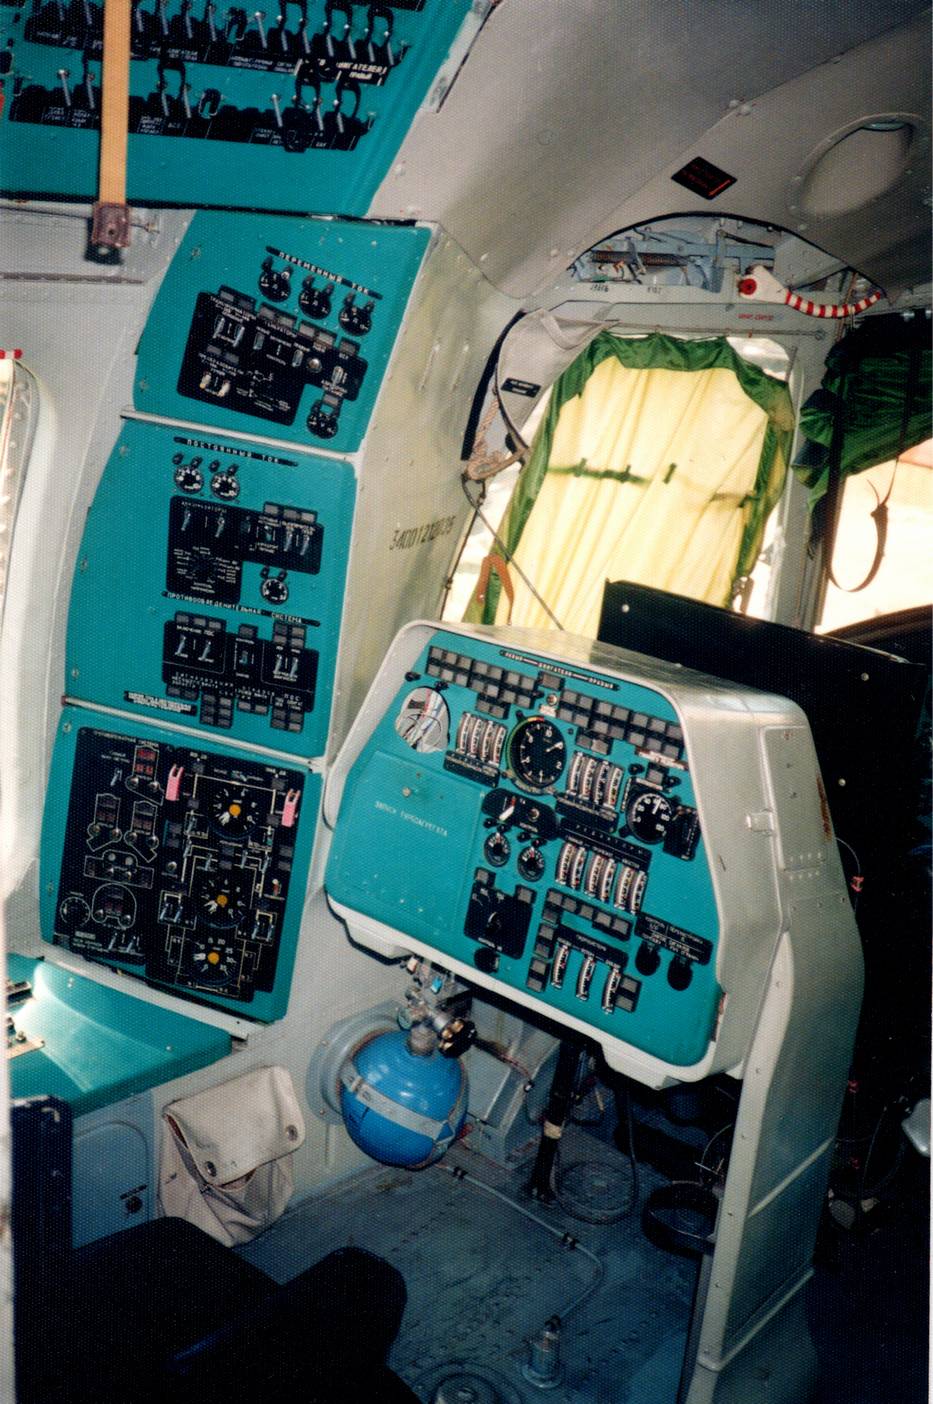 Вертолет Ми-27 борт СССР-06098 – воздушный командный пункт для штаба военного округа, фронта или оперативного направления.Кабина летного экипажа, рабочее место бортинженера. Вверху слева два щитка электросистемы, под ними – пульт контроля состояния двигателей и справа – панель запуска вспомогательной и основной силовых установок